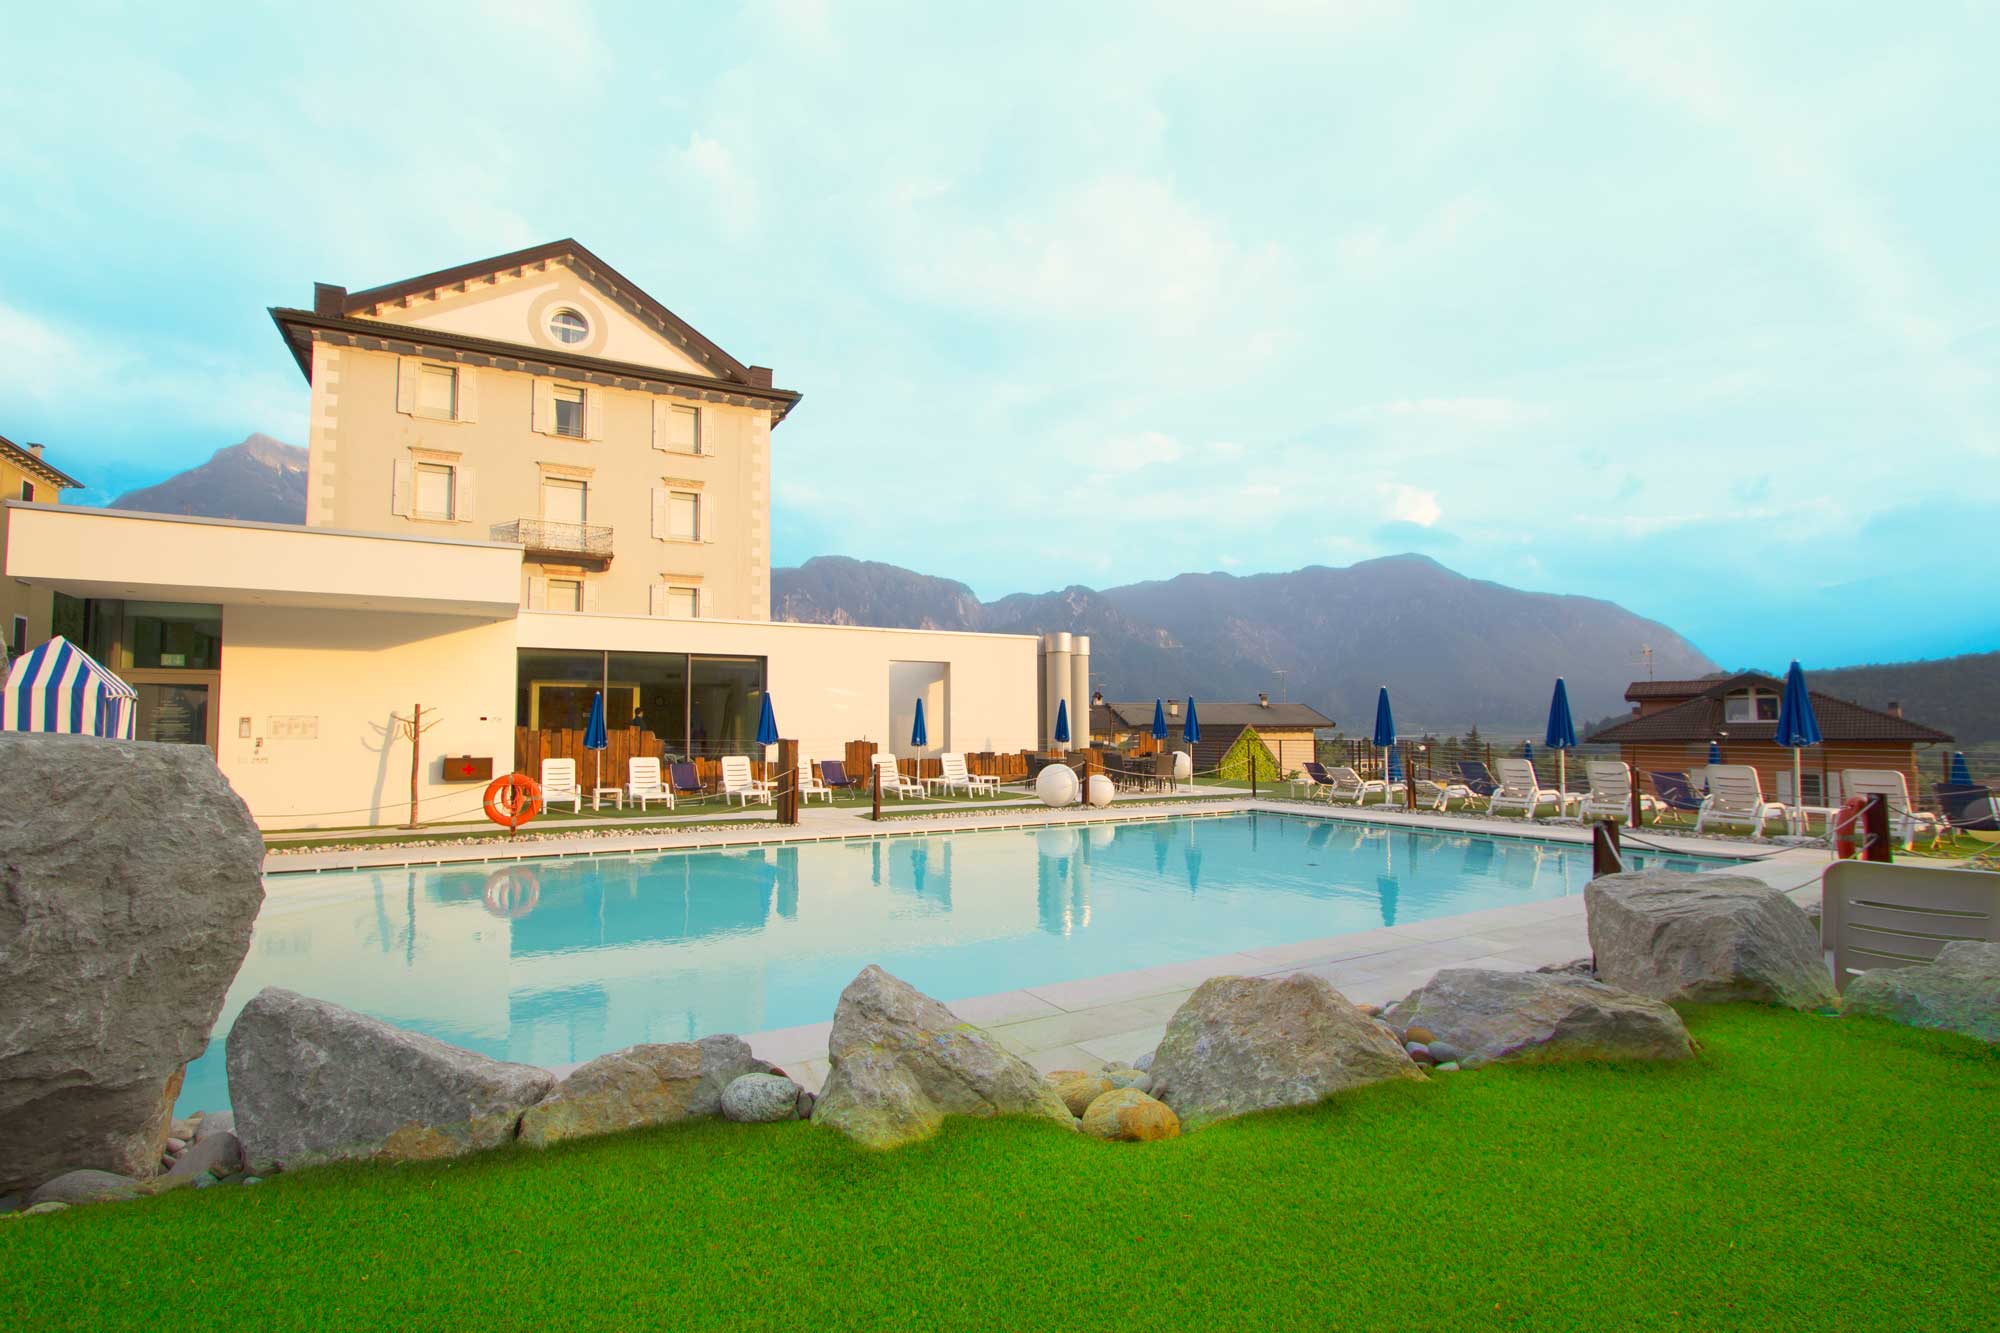 Bellavista Relax Hotel a Levico Terme in Trentino | Levico Terme ...